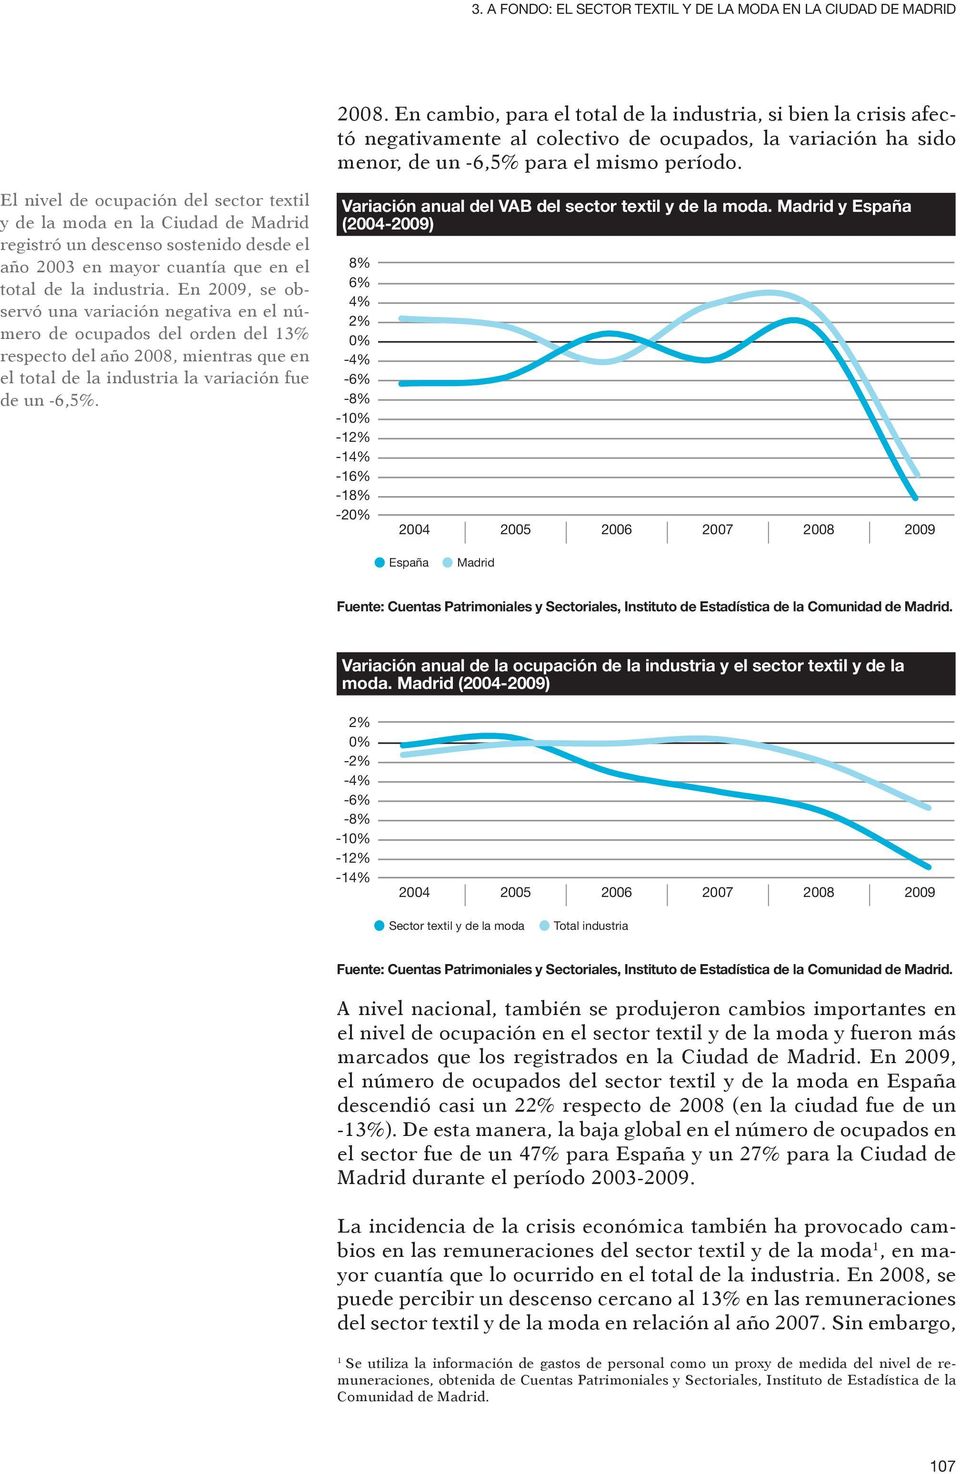 El nivel de ocupación del sector textil y de la moda en la Ciudad de Madrid registró un descenso sostenido desde el año 2003 en mayor cuantía que en el total de la industria.